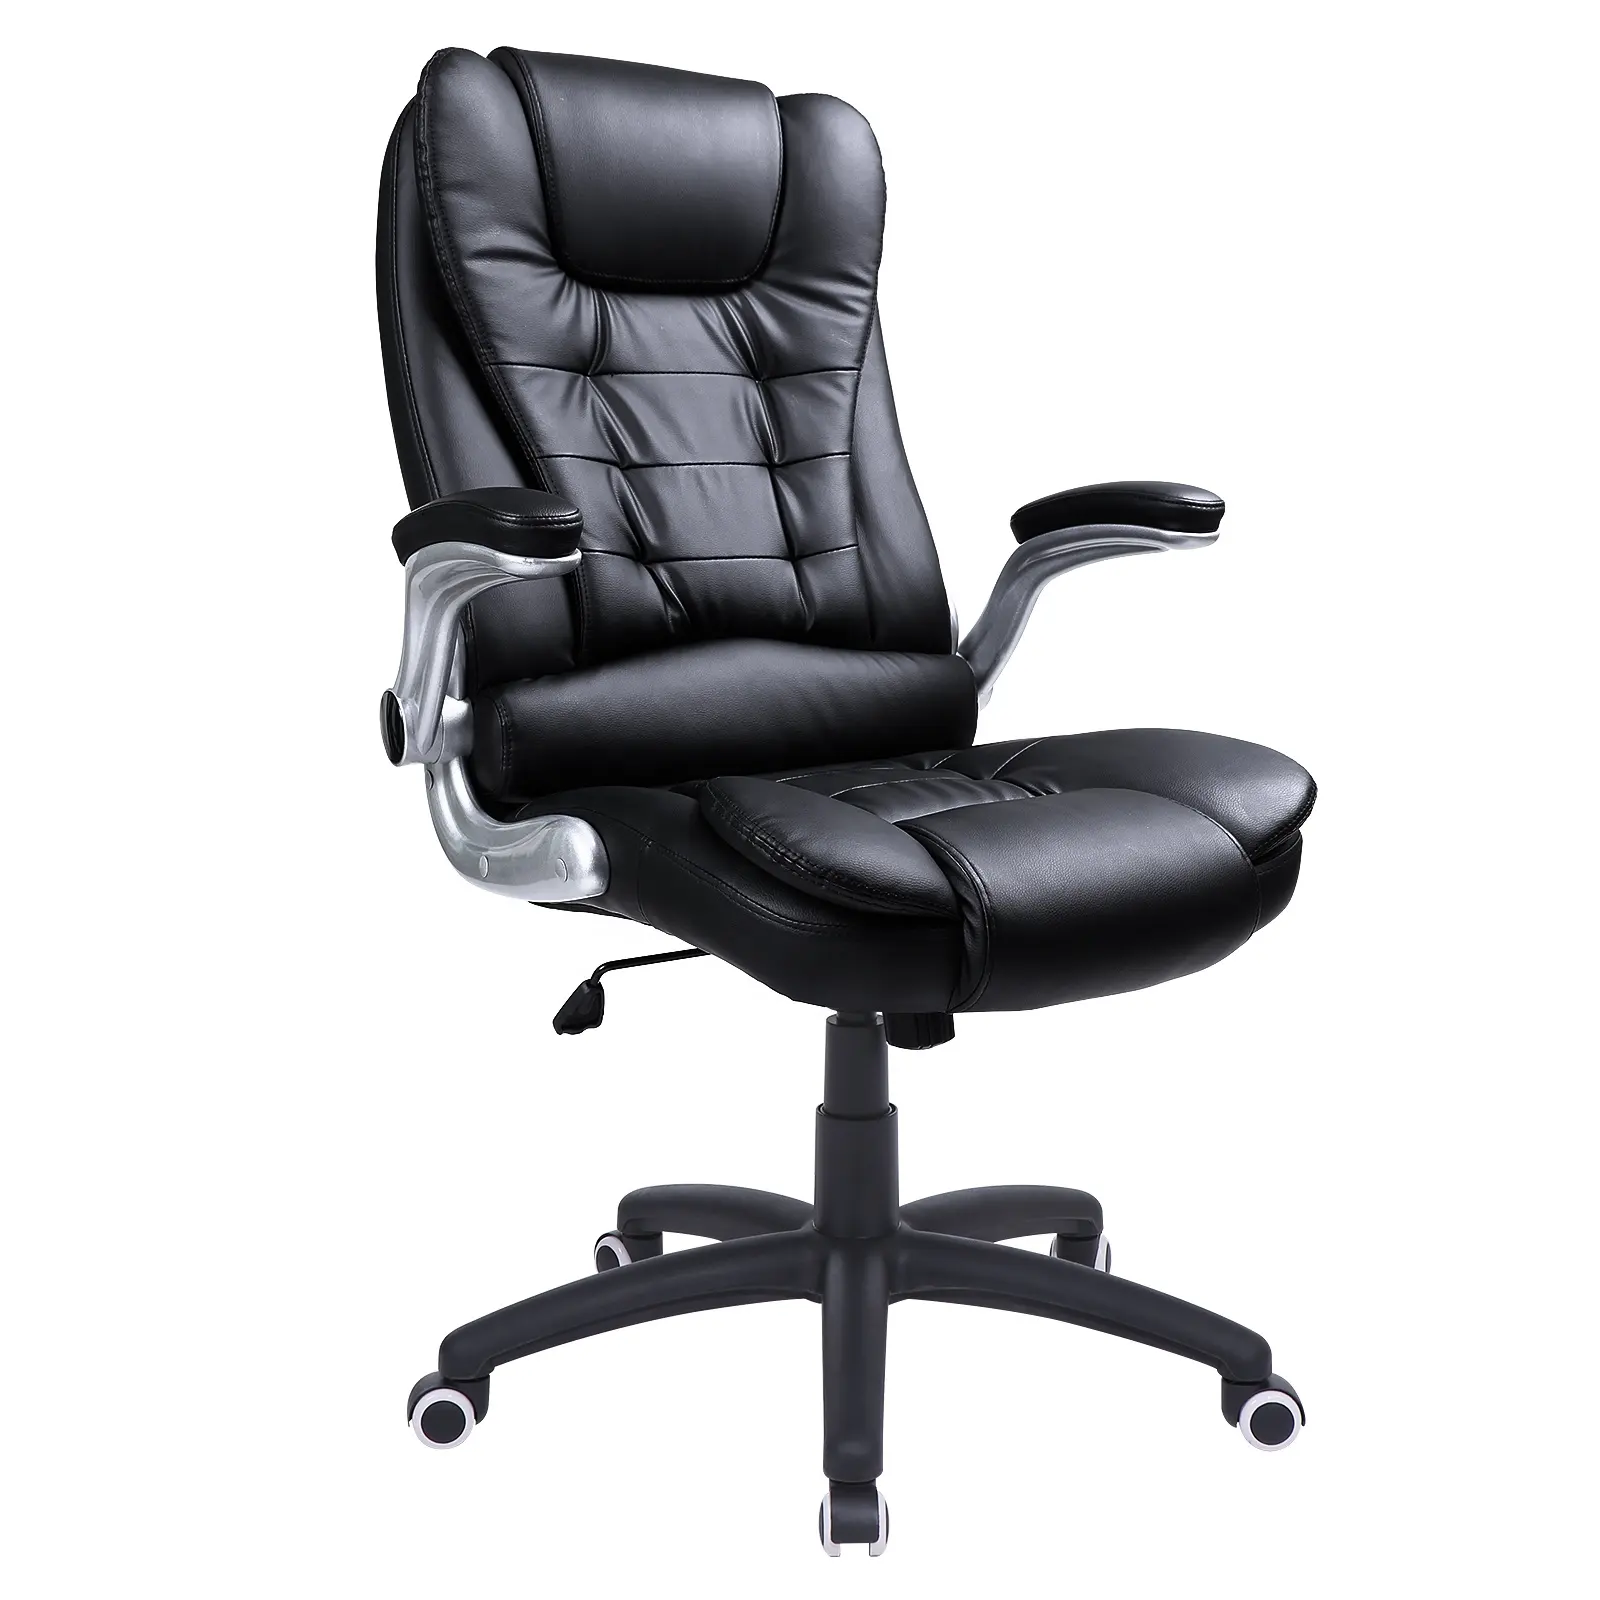 Silla ejecutiva ergonómica ajustable de cuero PU, sillón de oficina de alta calidad, de lujo, color negro, venta al por mayor